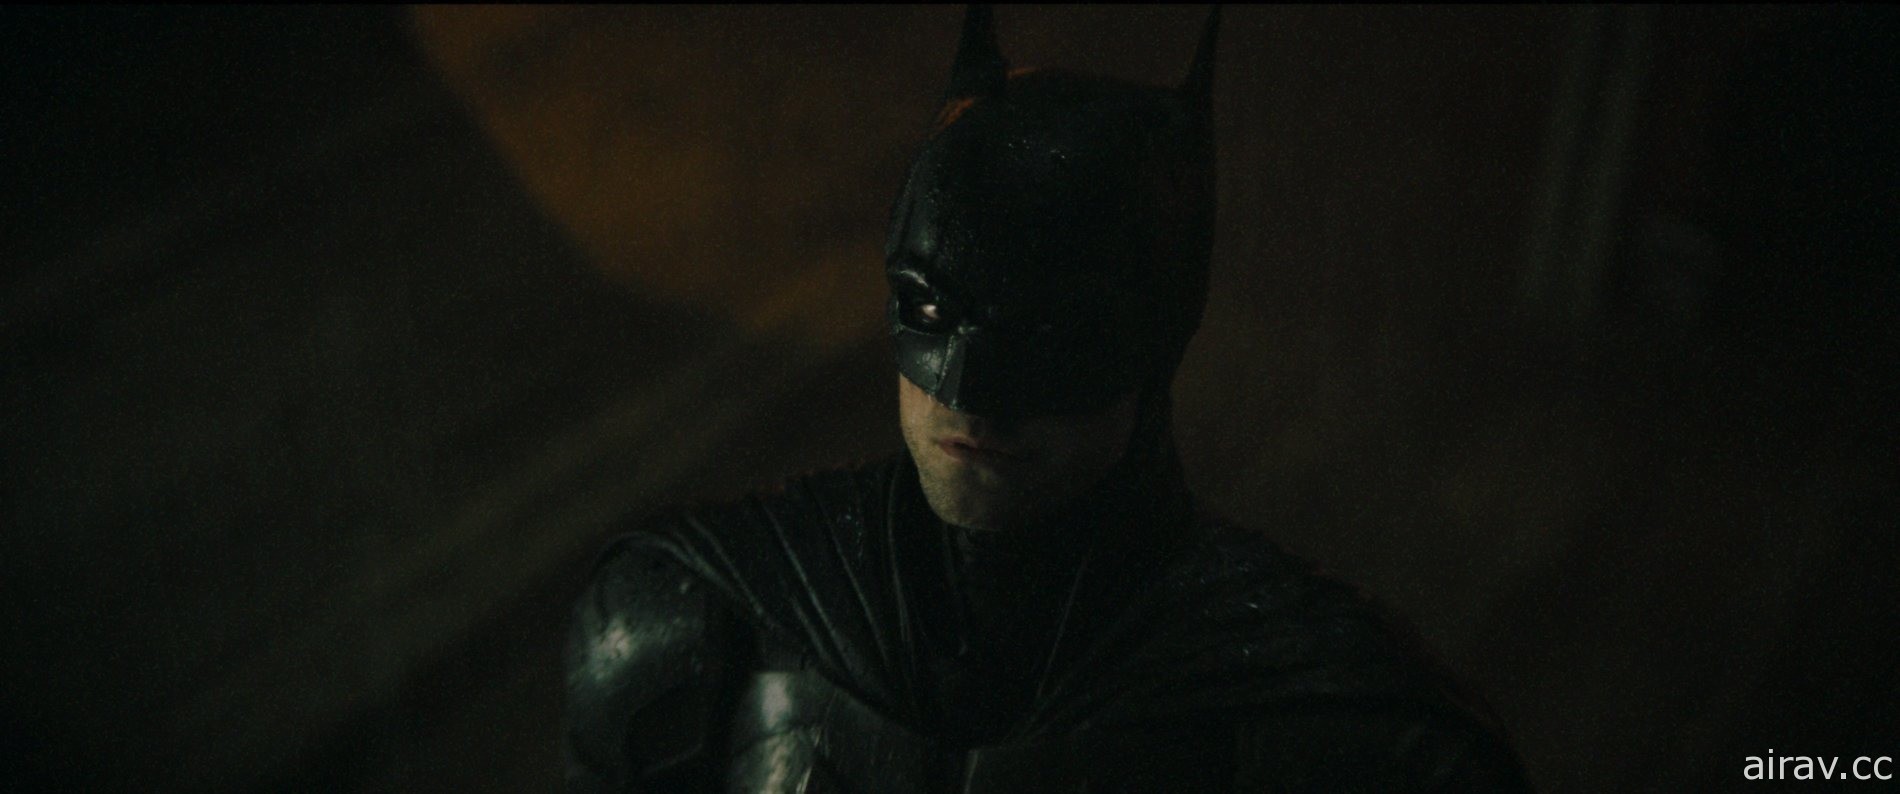 《蝙蝠俠》釋出最新預告影片 2022 年 3 月在台上映